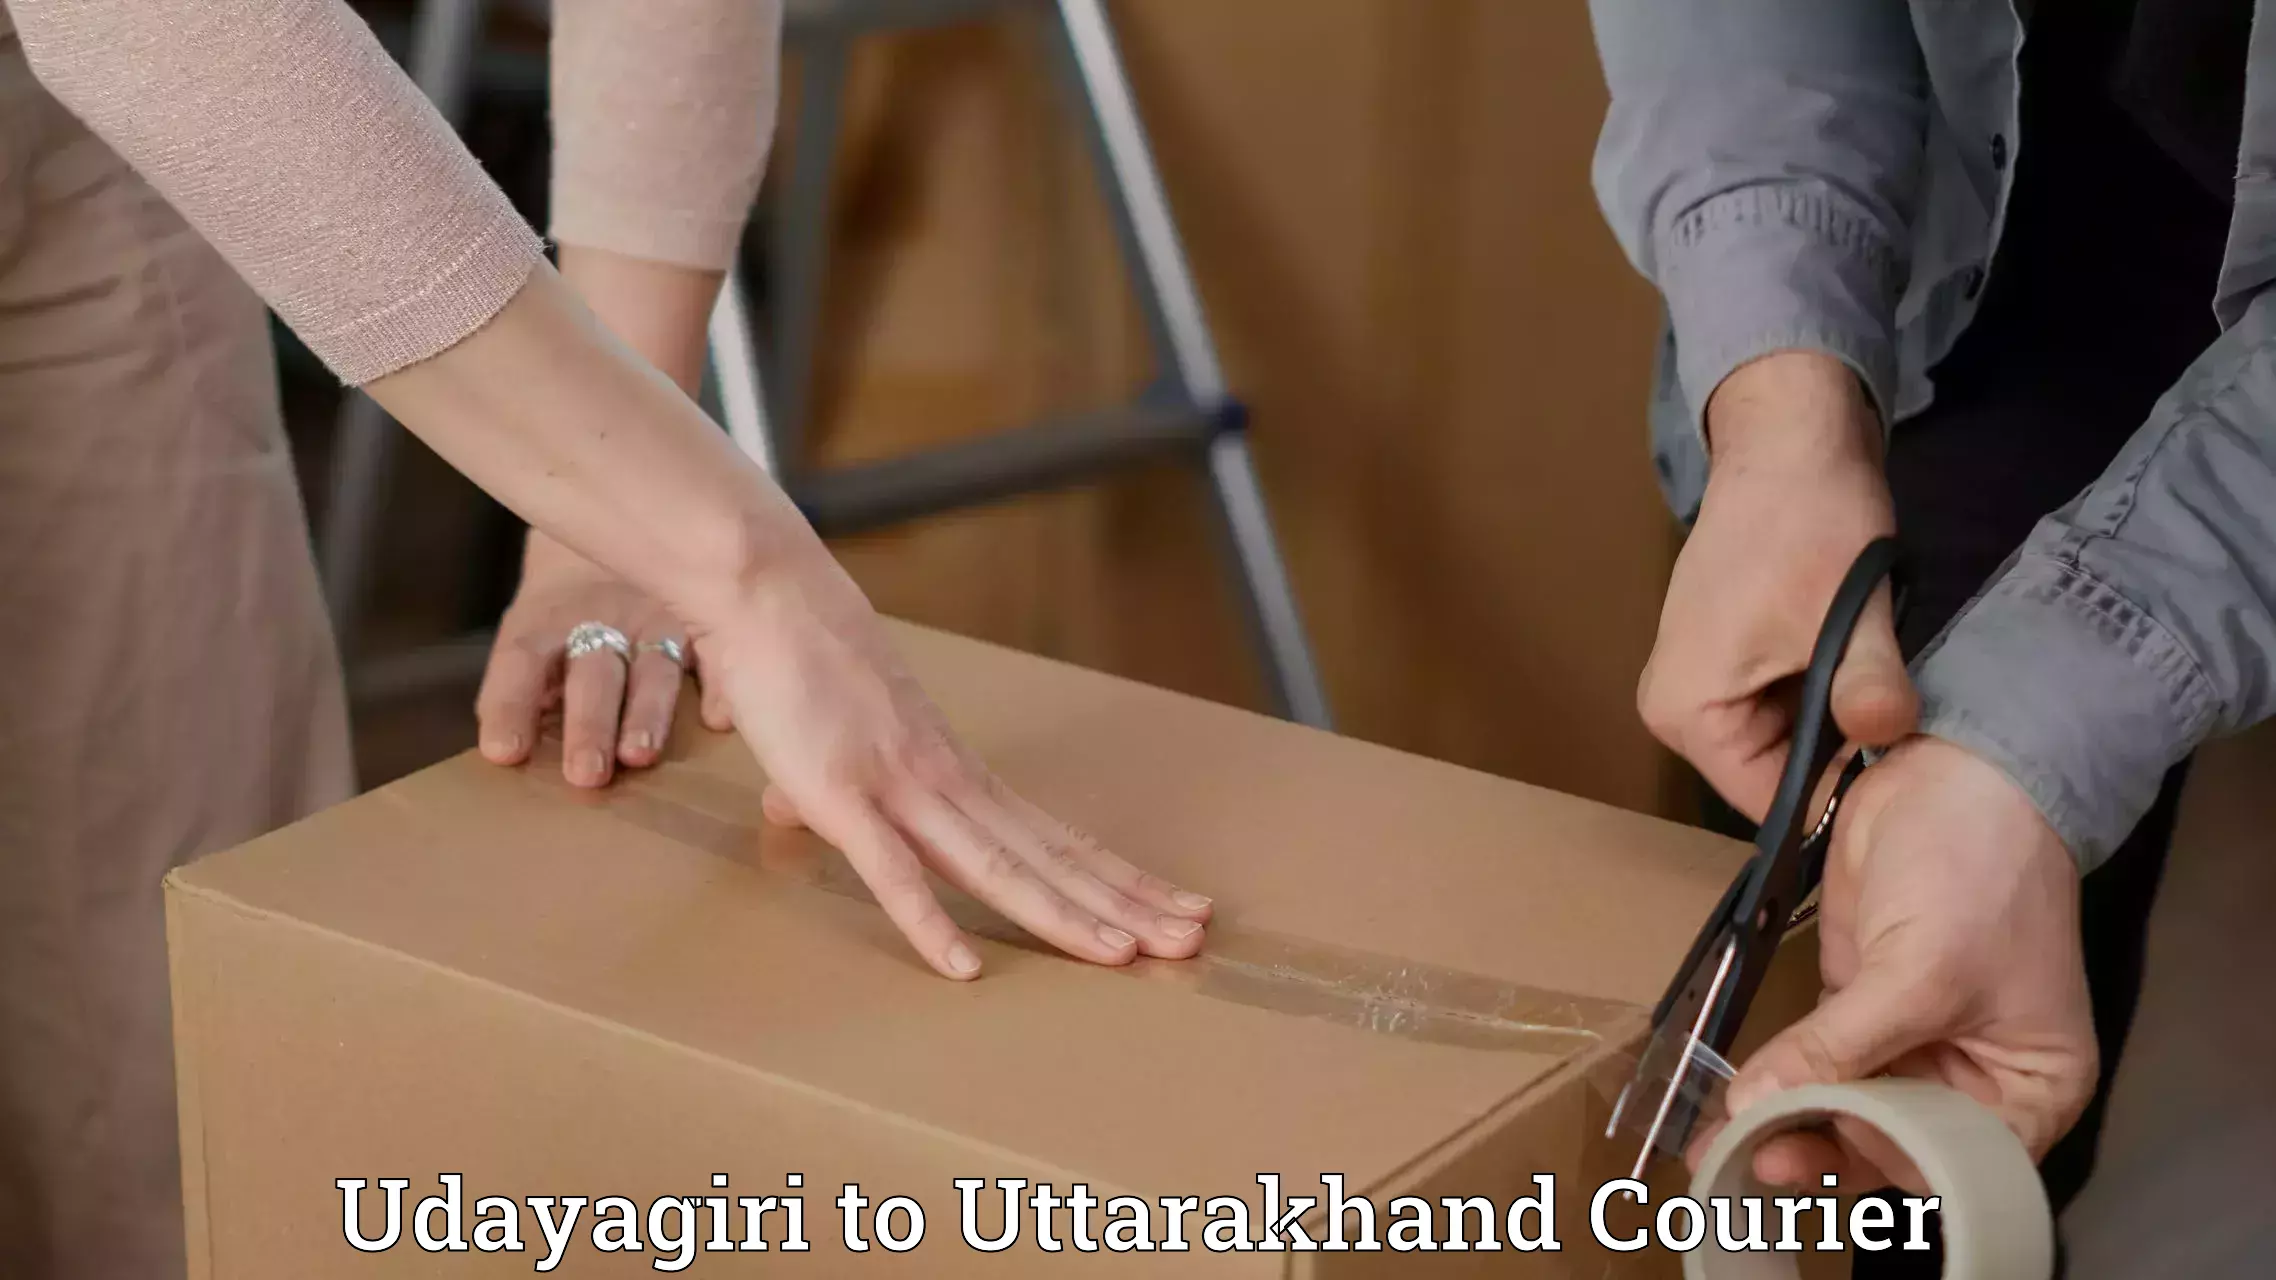 Baggage transport network Udayagiri to Uttarakhand